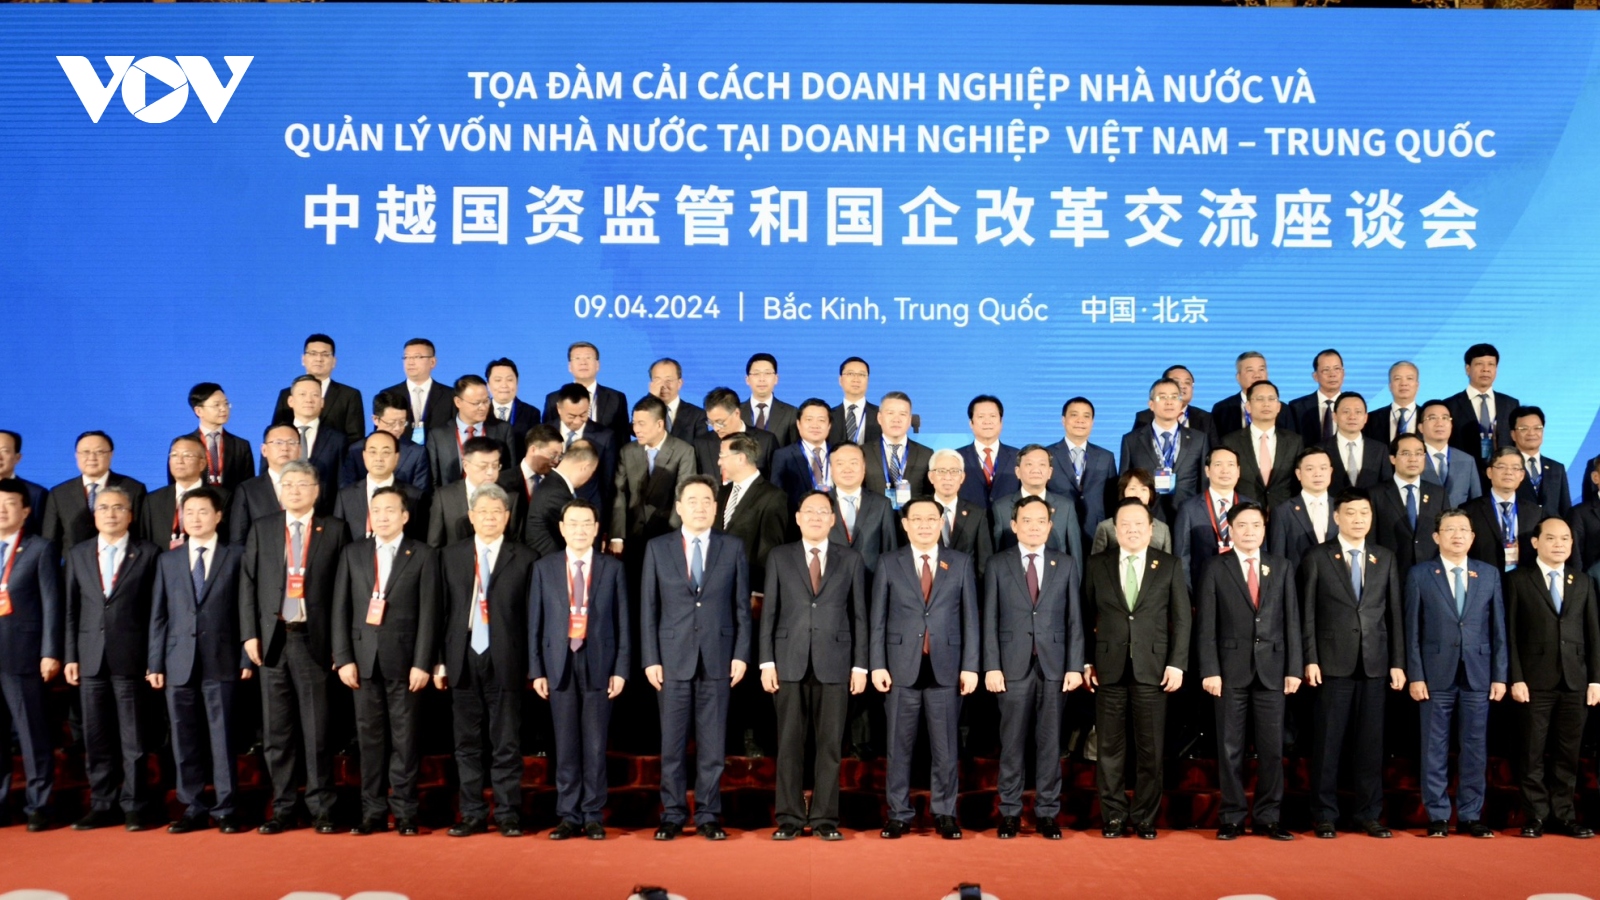 Chủ tịch Quốc hội Vương Đình Huệ dự tọa đàm về DN nhà nước Việt Nam - Trung Quốc